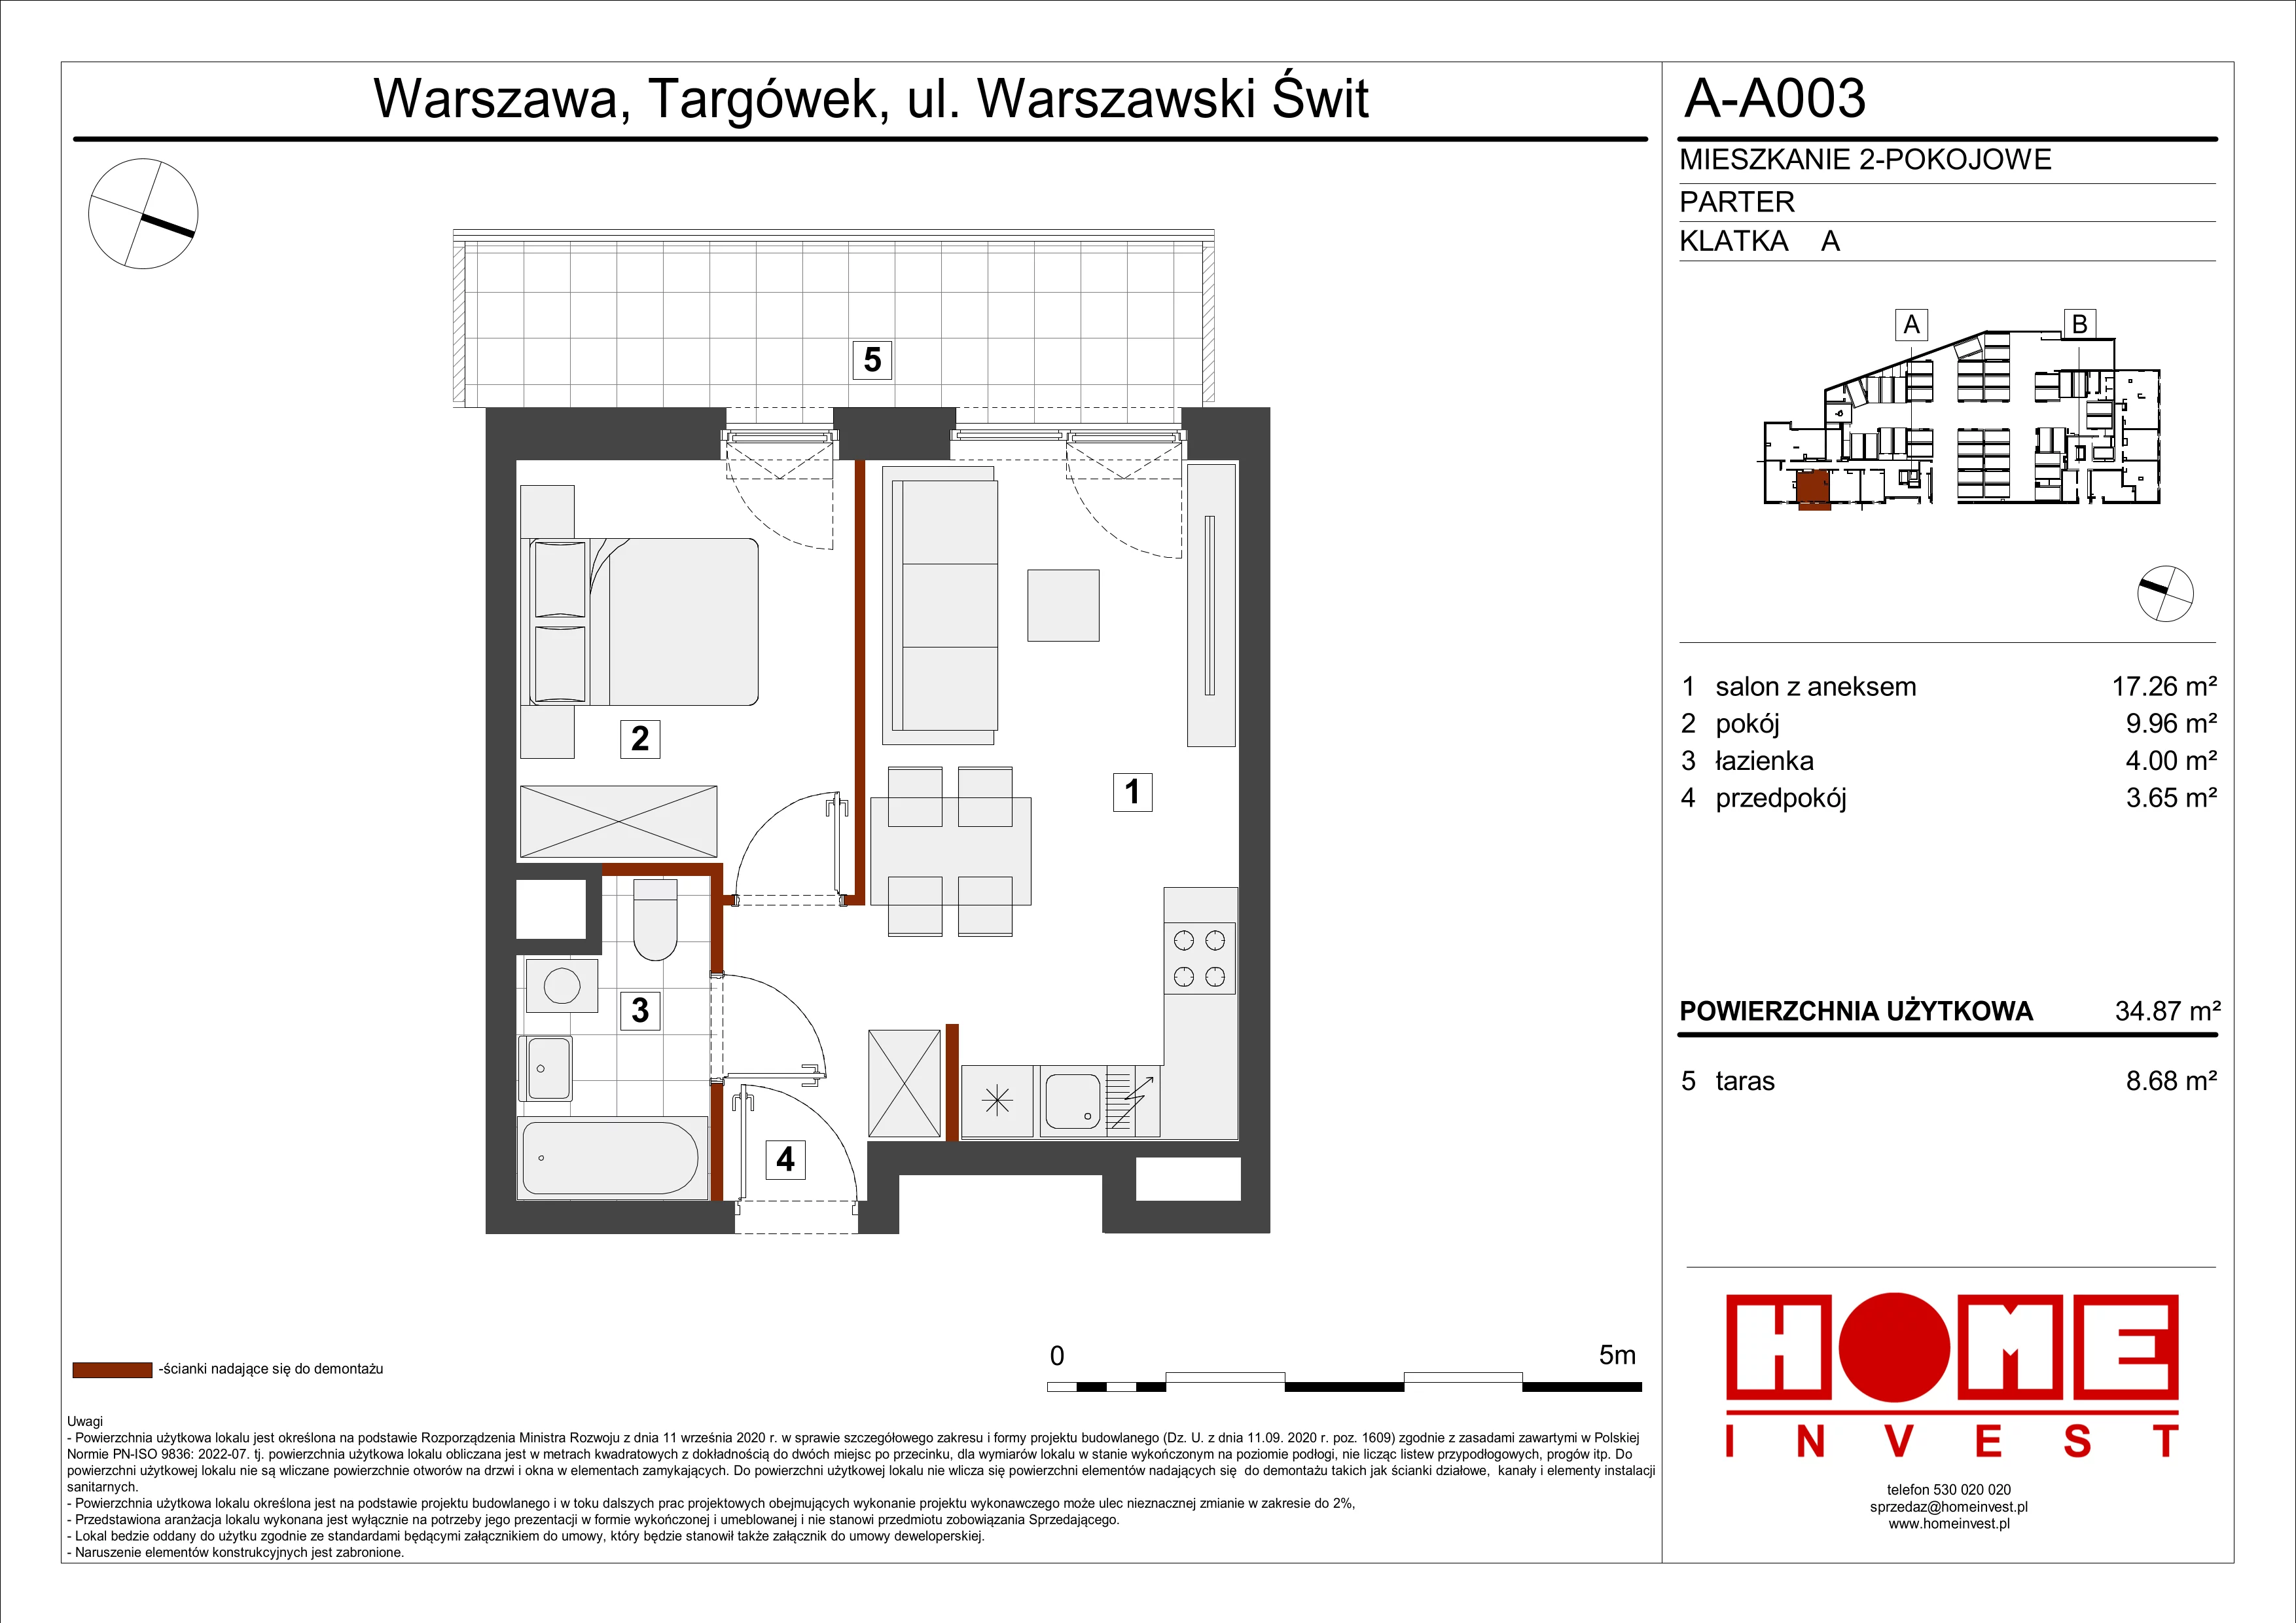 Mieszkanie 34,87 m², parter, oferta nr A-A003, Warszawski Świt, Warszawa, Targówek, Bródno, ul. Warszawski Świt 5